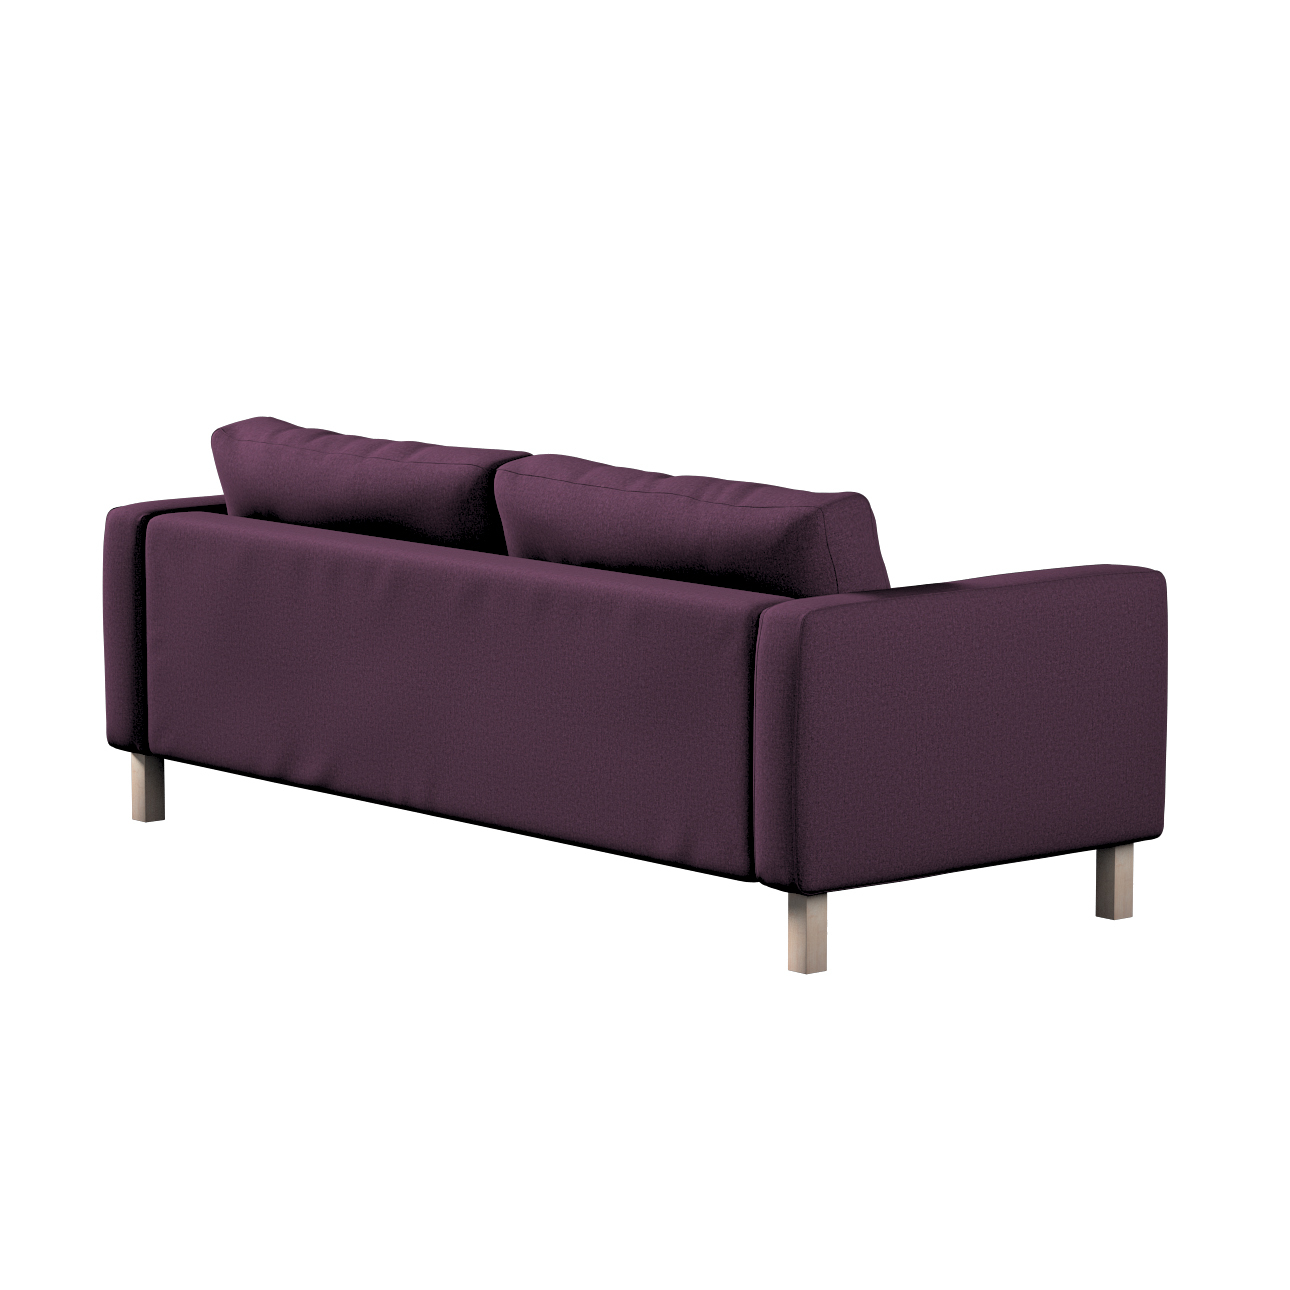 Bezug für Karlstad 3-Sitzer Sofa nicht ausklappbar, kurz, pflaume, Bezug fü günstig online kaufen